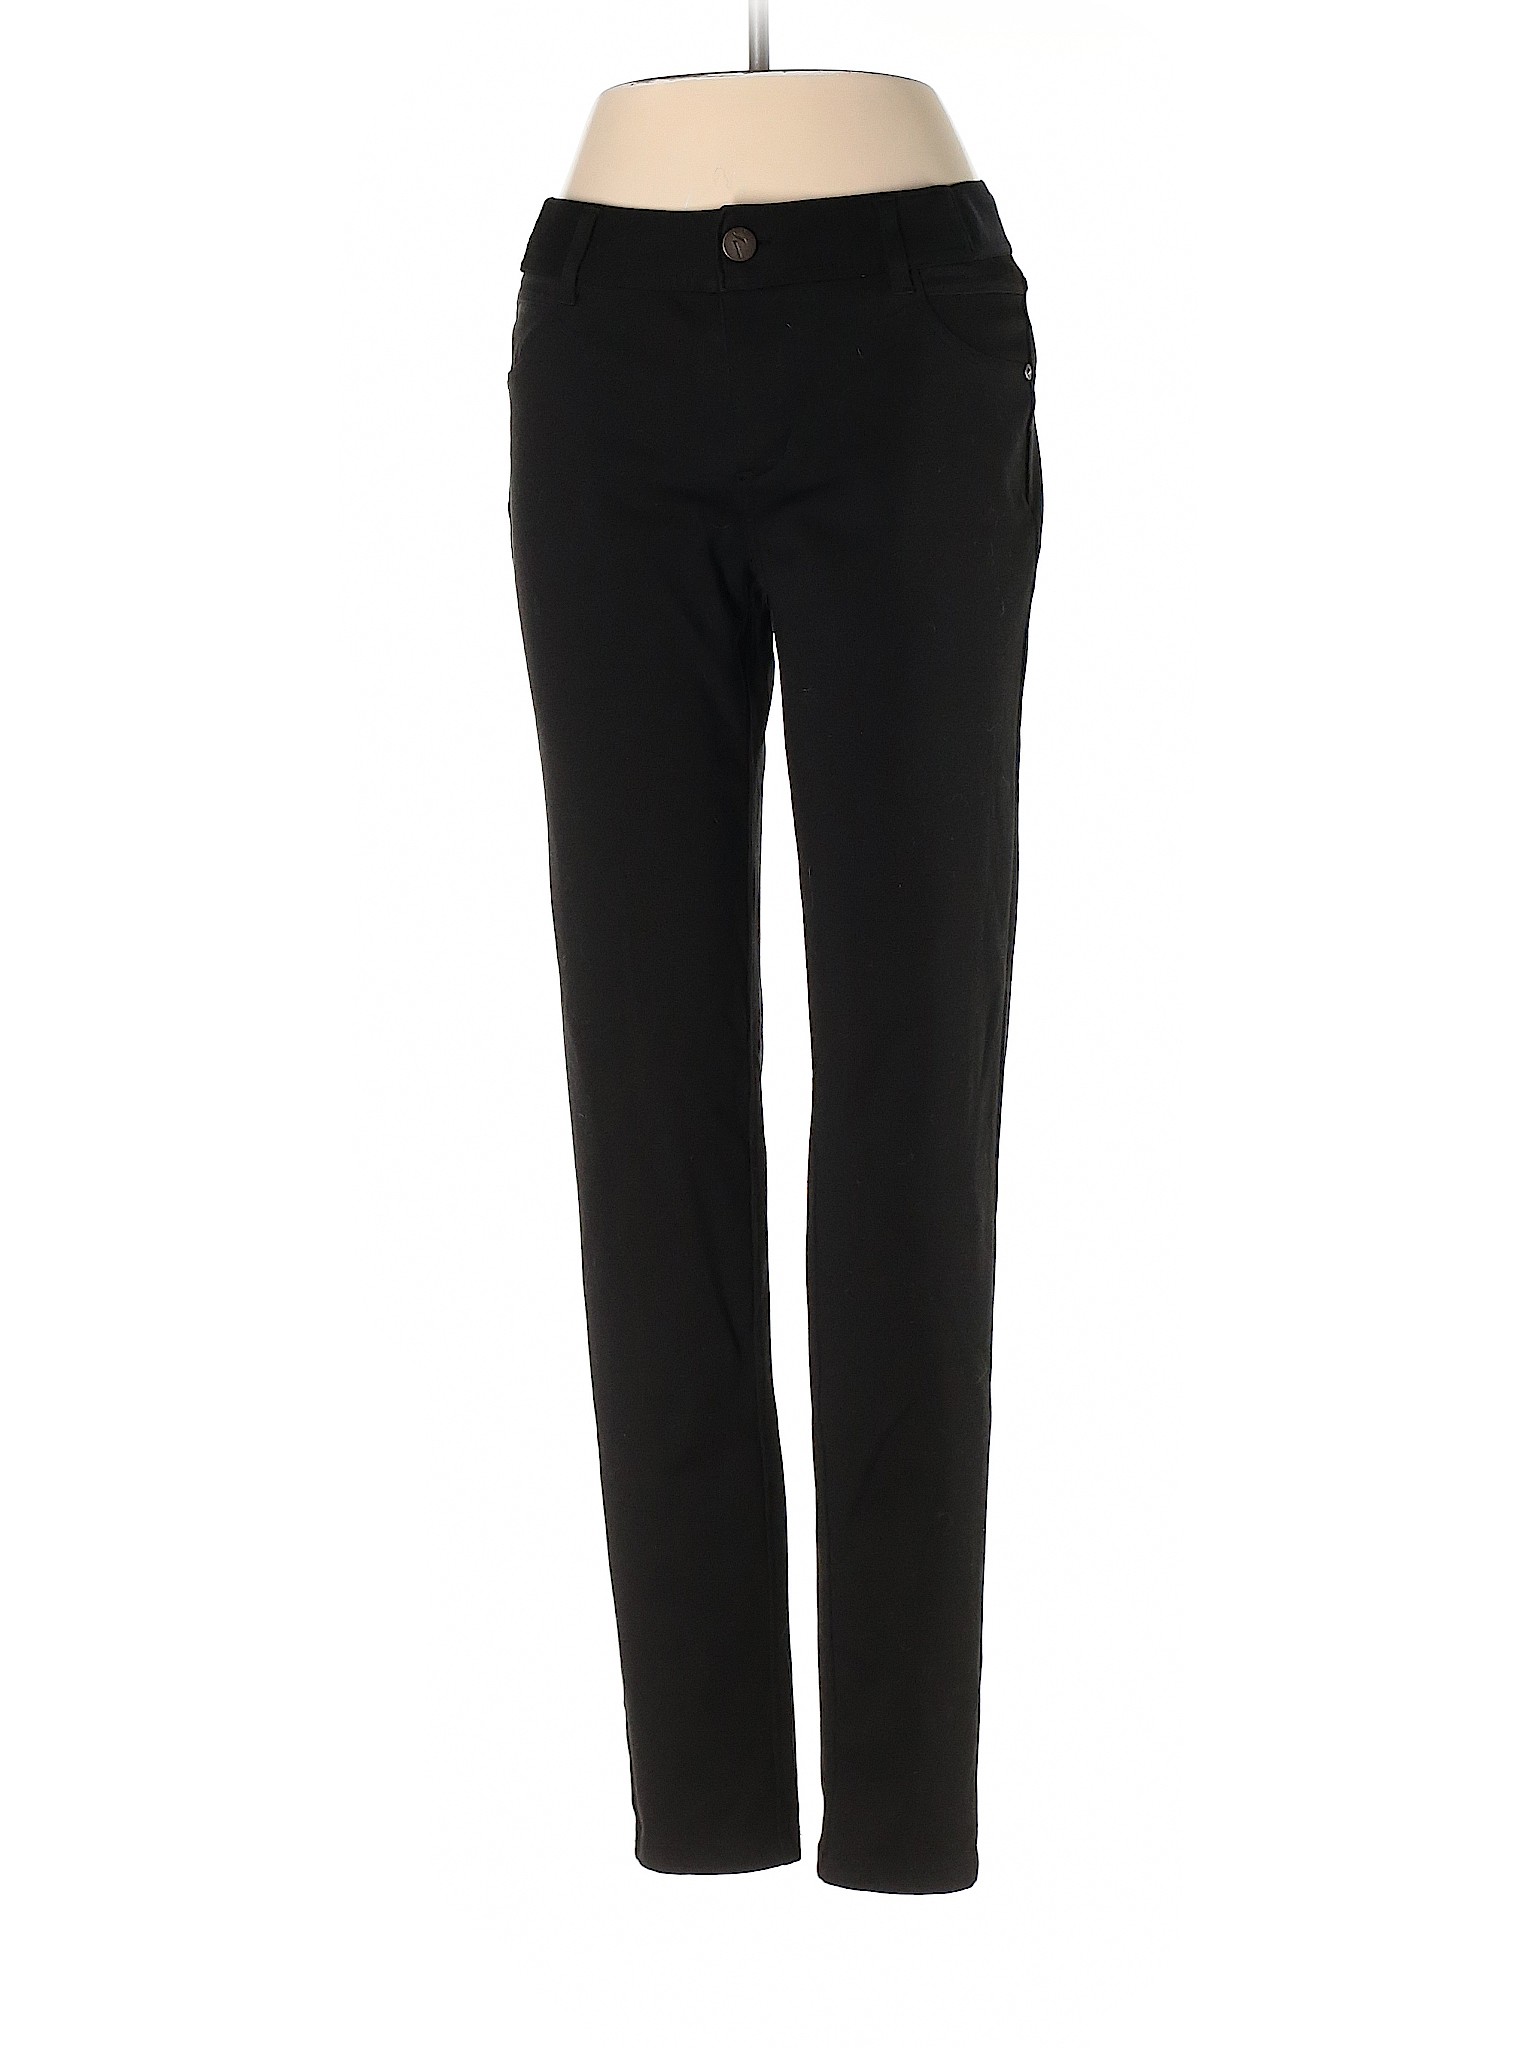 Simply Vera Vera Wang Women Black Dress Pants S | eBay